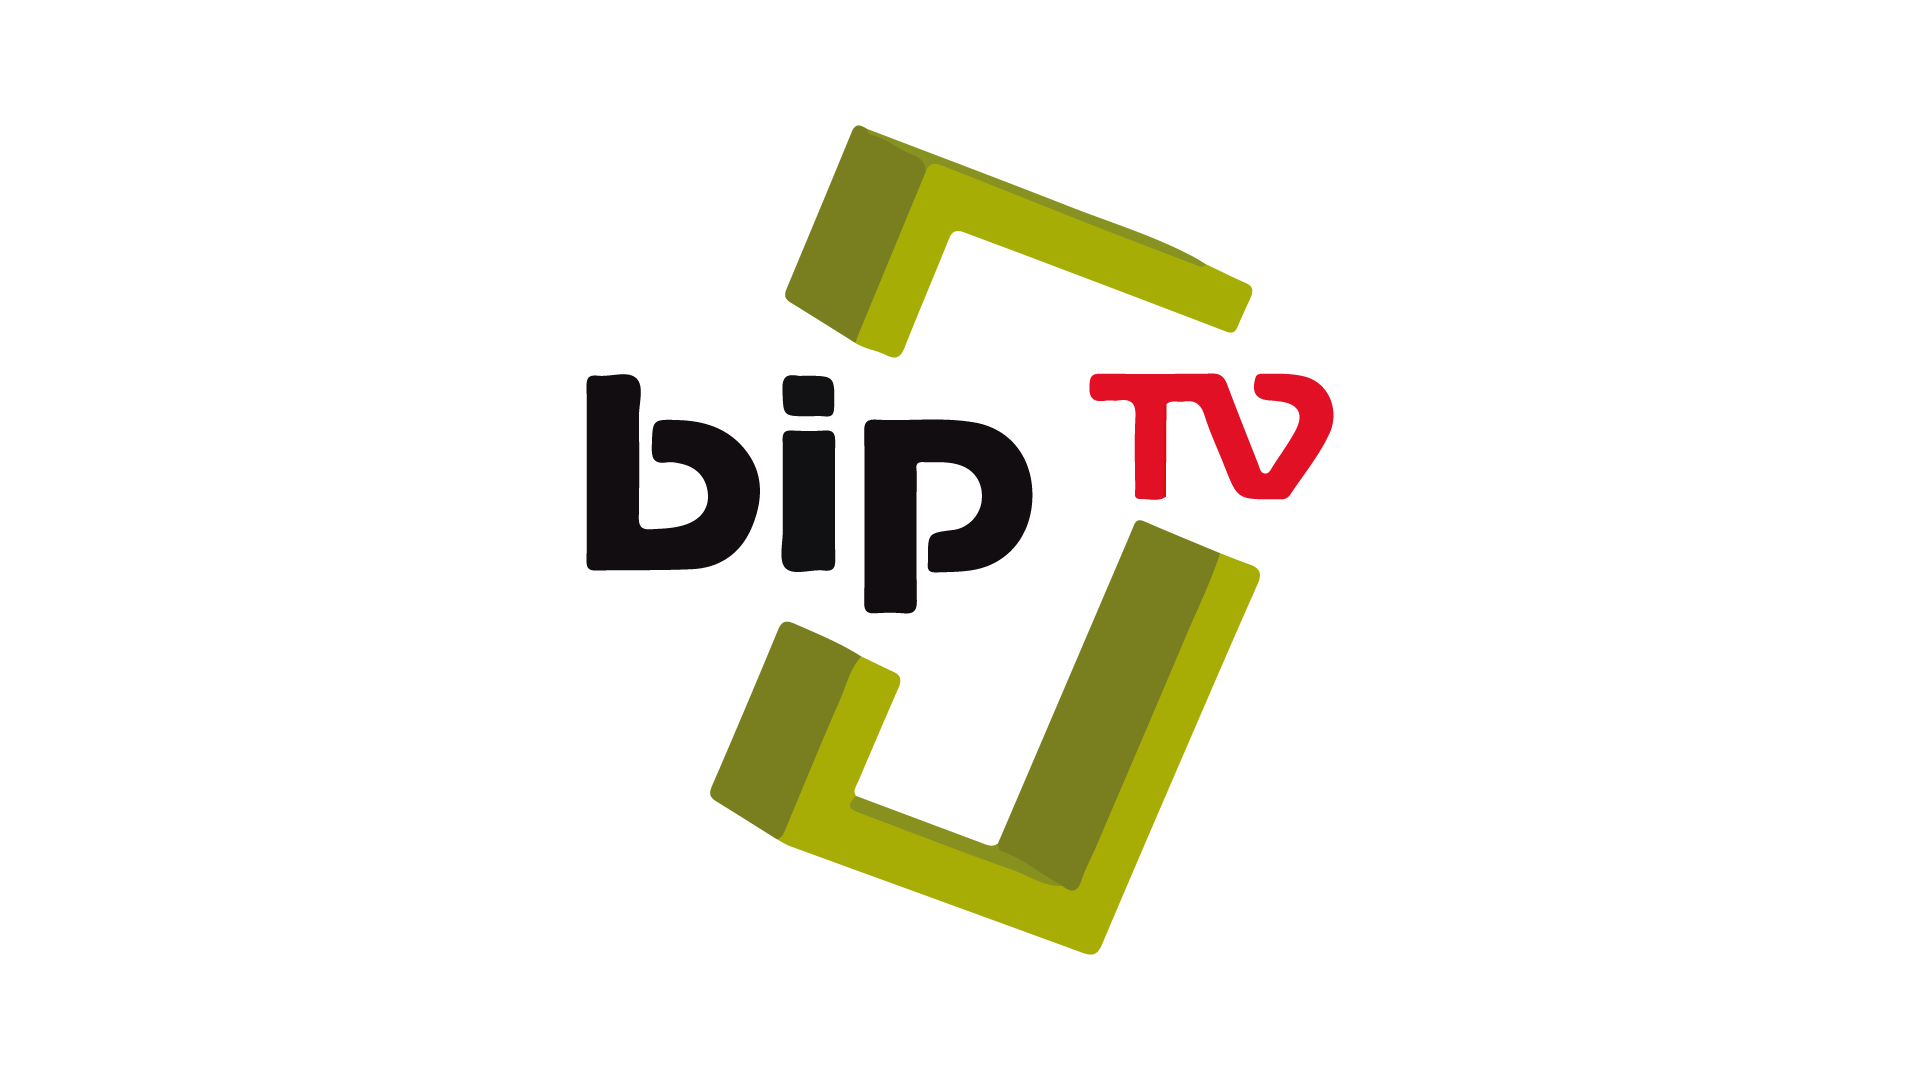 Bip TV